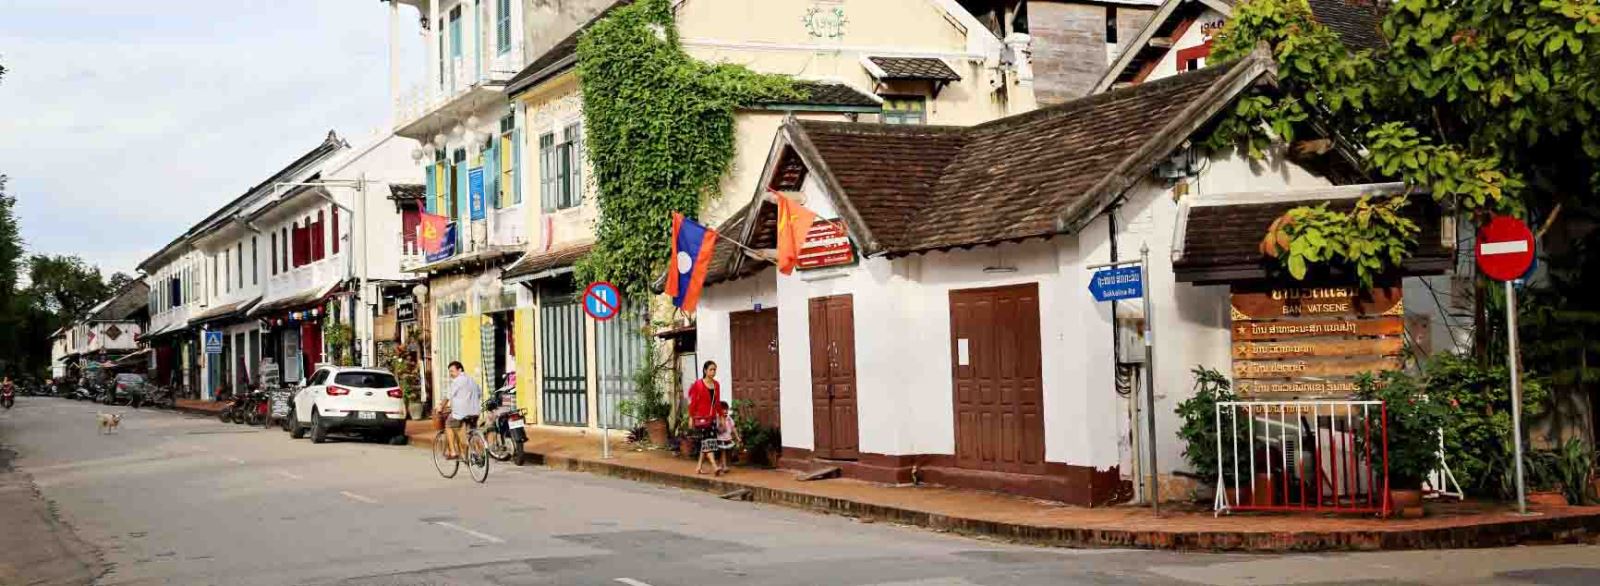 Luangprabang - Laos